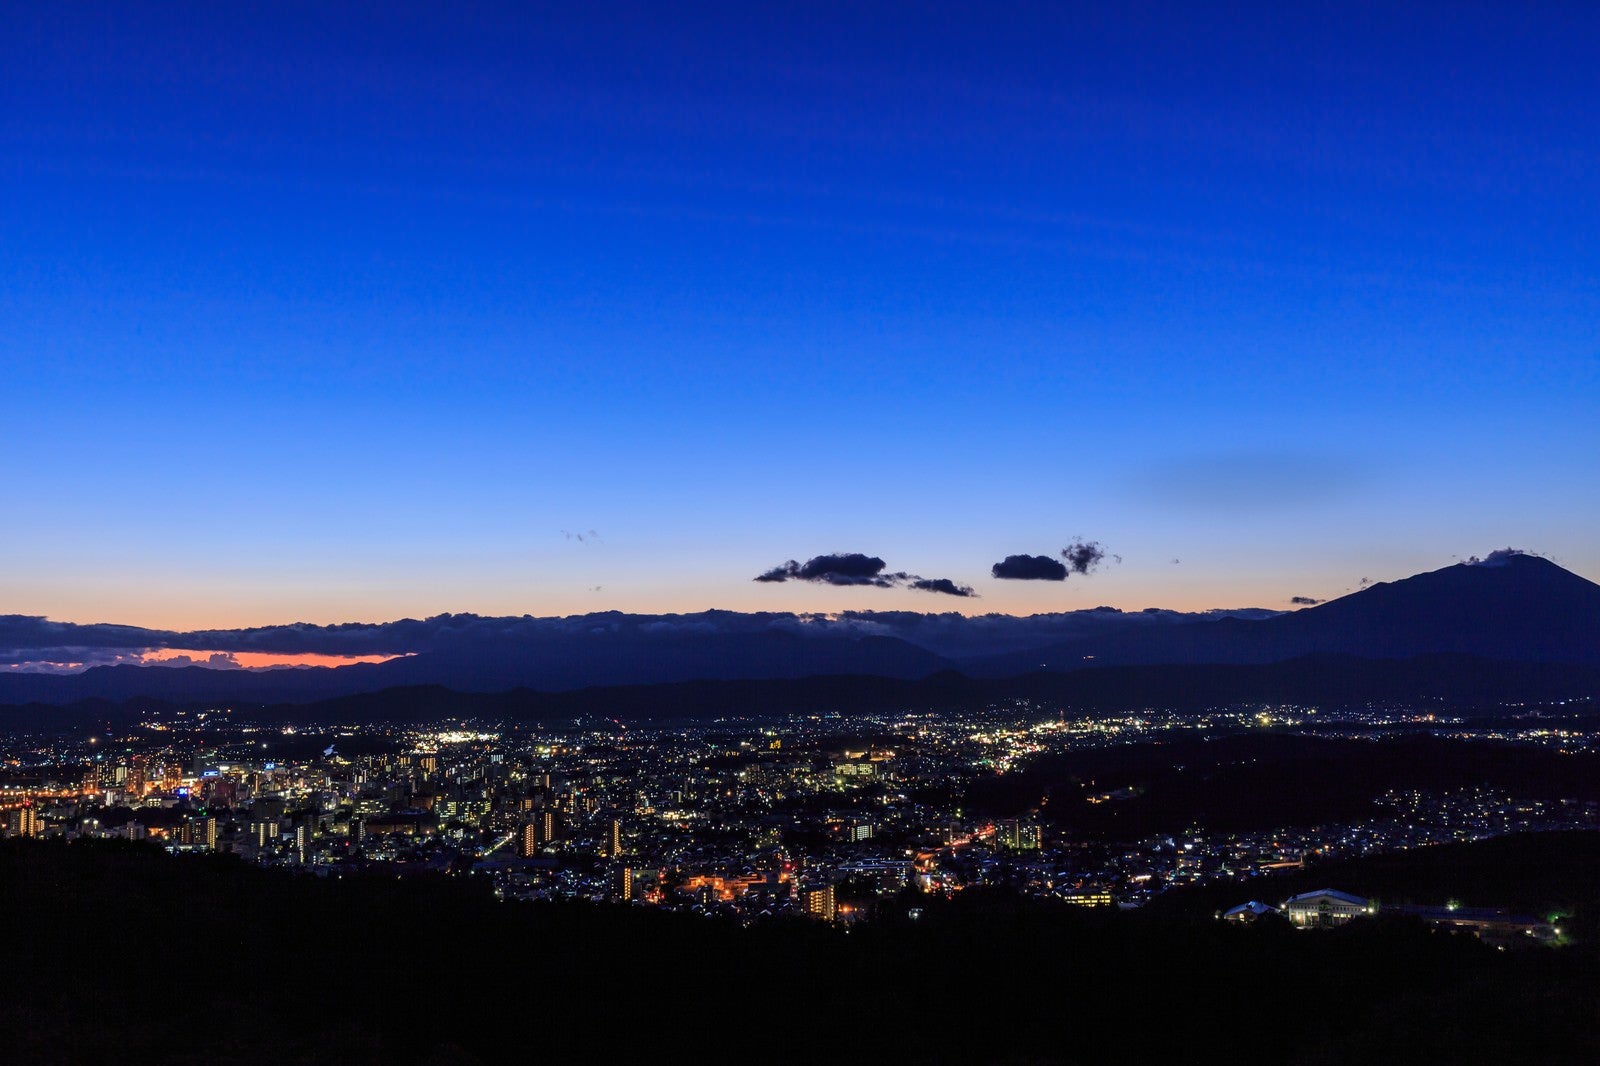 「岩山公園からの盛岡市街夜景」の写真